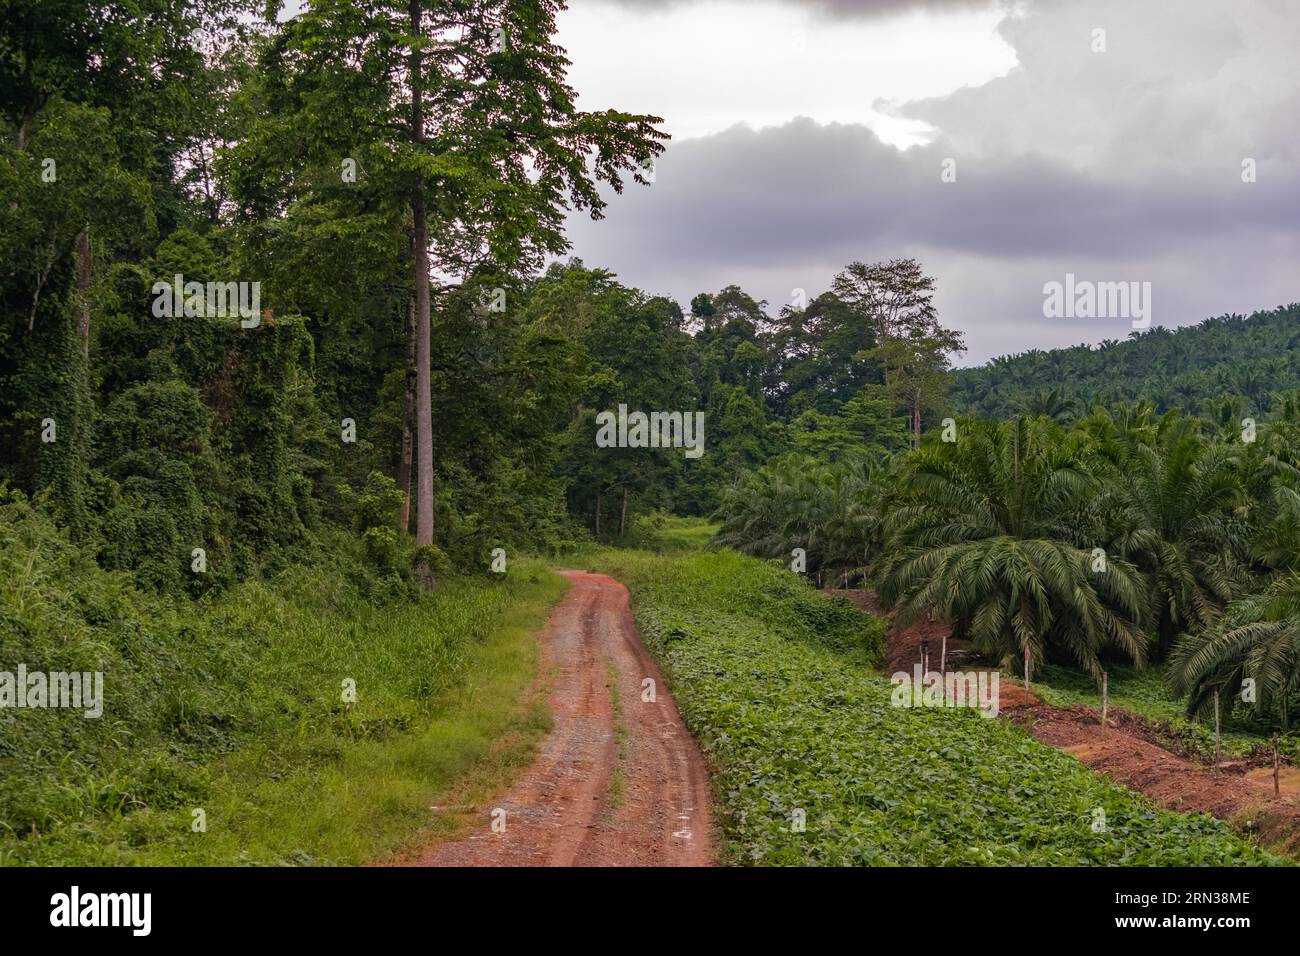 Incredibile vista di una piantagione di palme da olio e della foresta pluviale adiacente. Immagine molto significativa Foto Stock